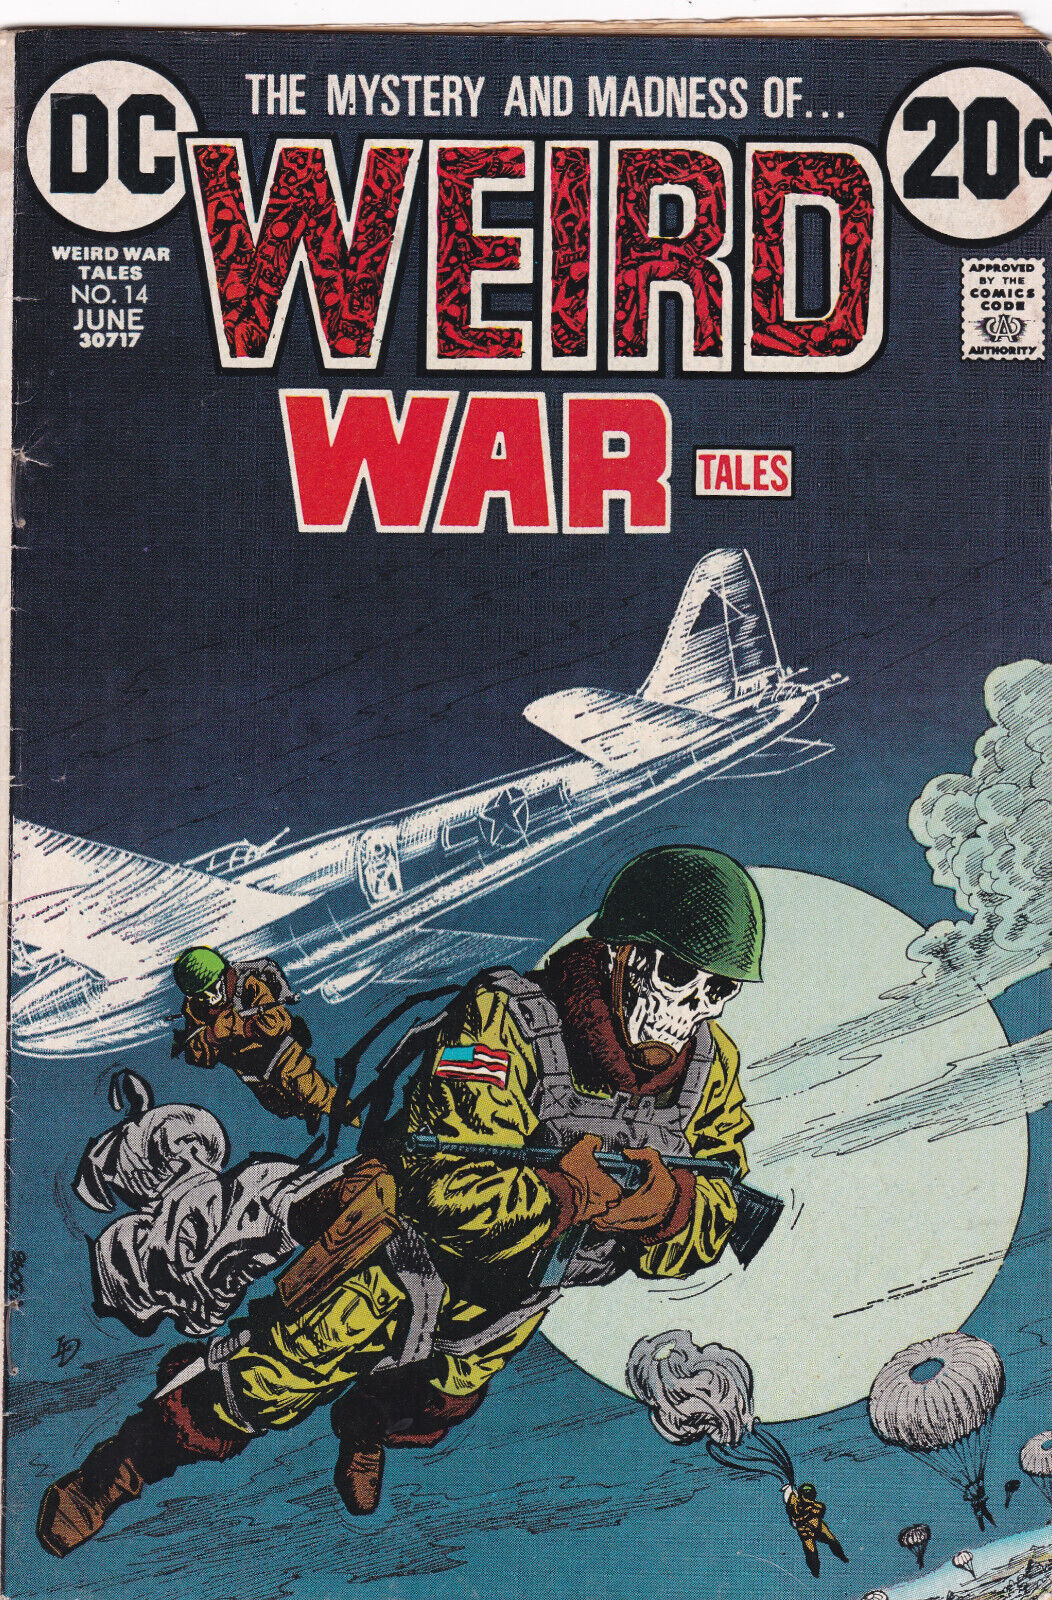 Weird War Tales #14 DC (1971) High Definitions Scans VF-